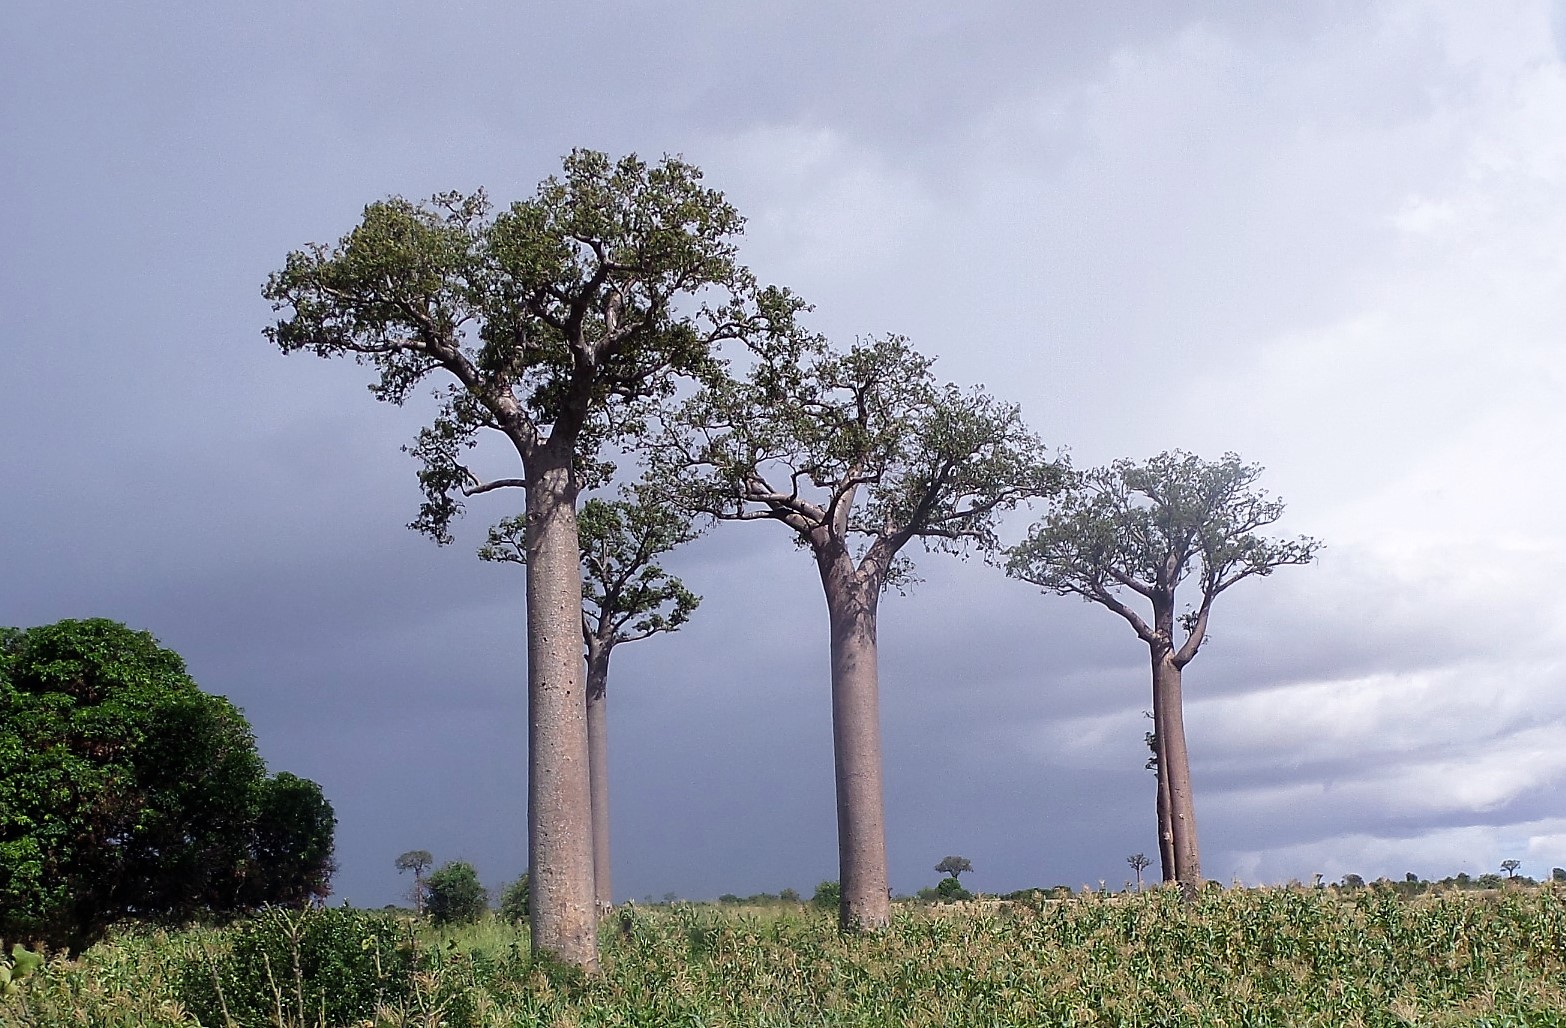 Madagaszkárt elsősorban a növény- és állatvilágáért keresik fel a turisták. Ezekről írok most.
A növények között a leghíresebb, legismertebb a baobab fa. Érdeke...